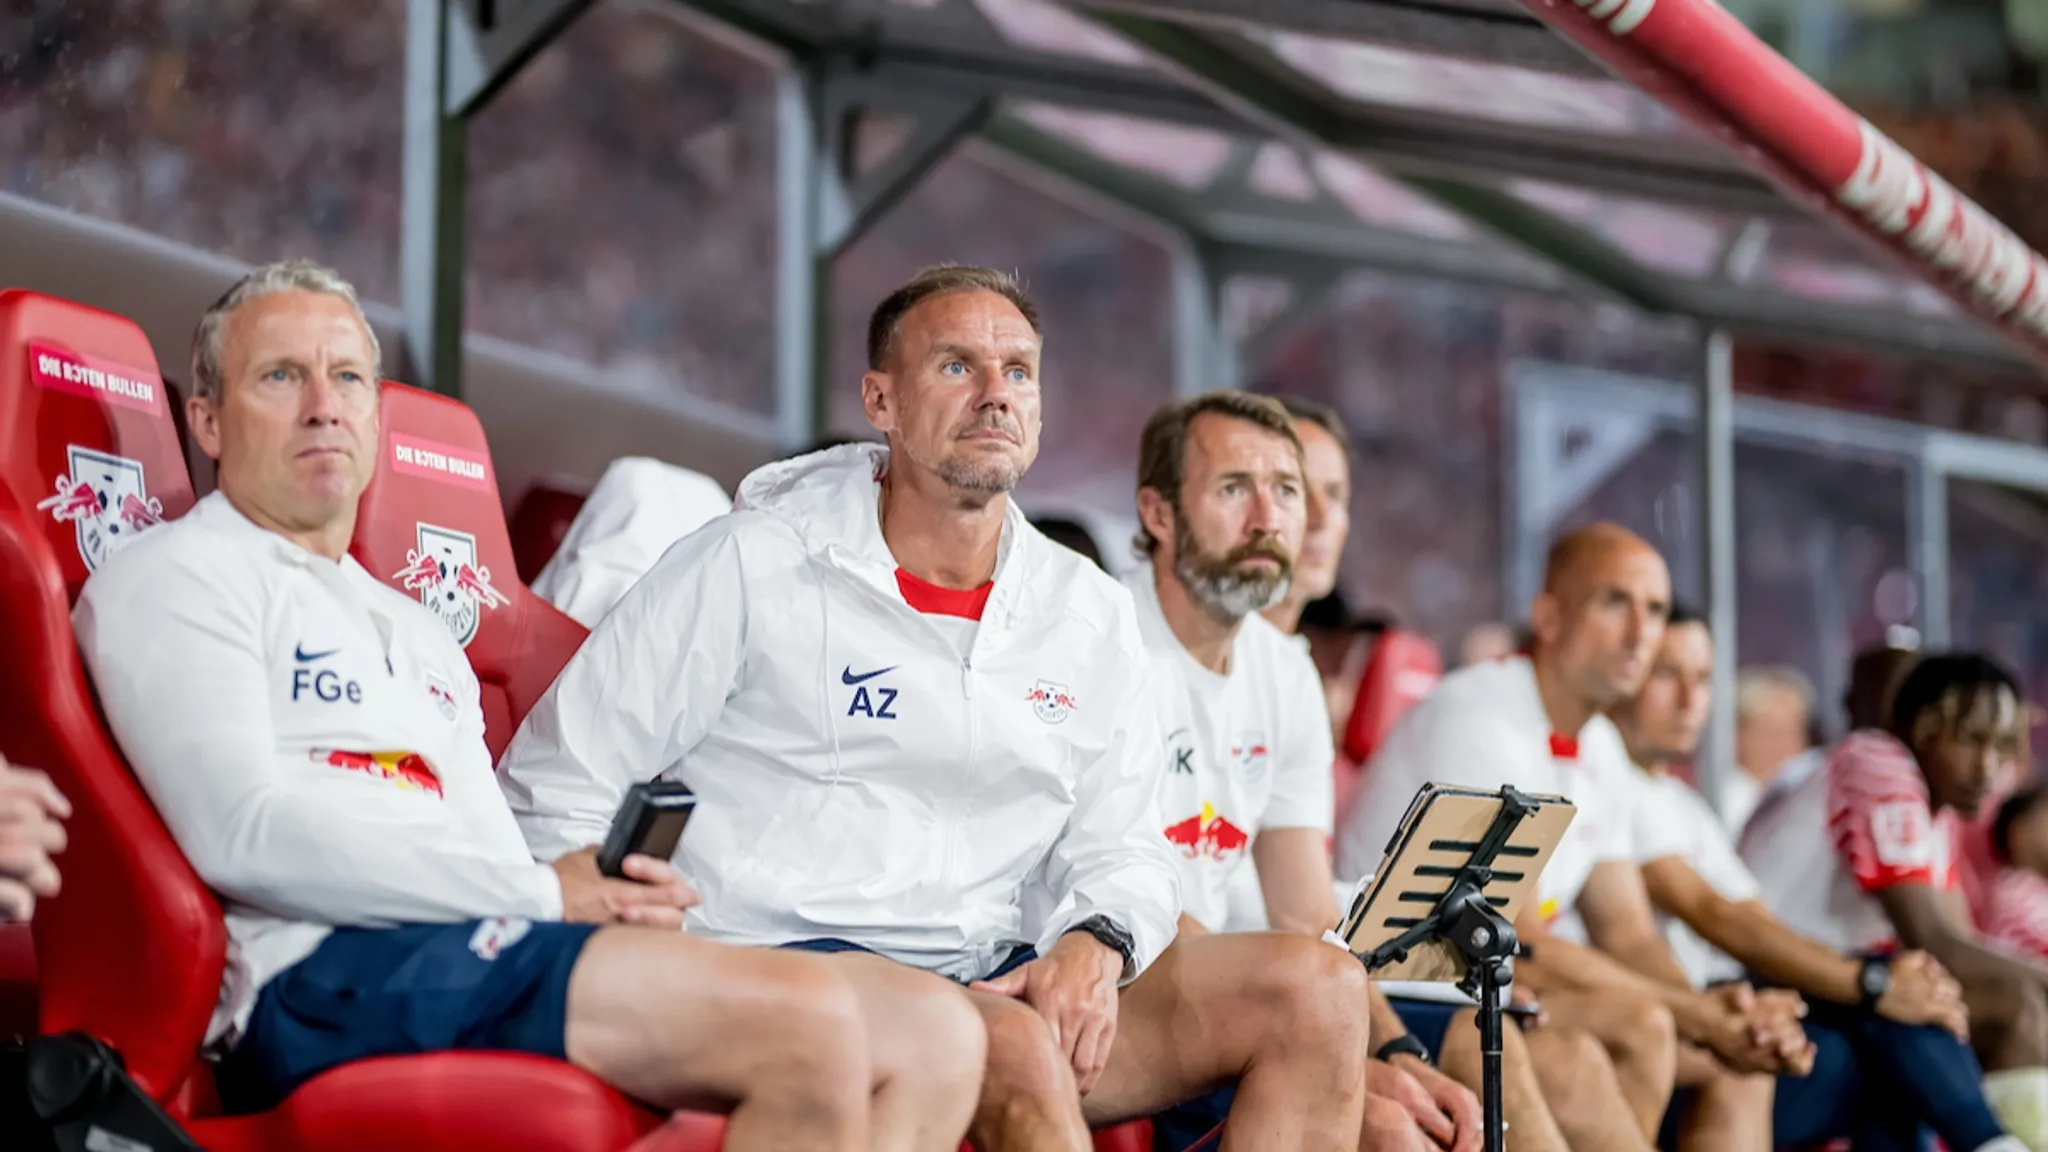 Frank Geideck, Alexander Zickler und Marco Kurth auf der RBL-Trainerbank.